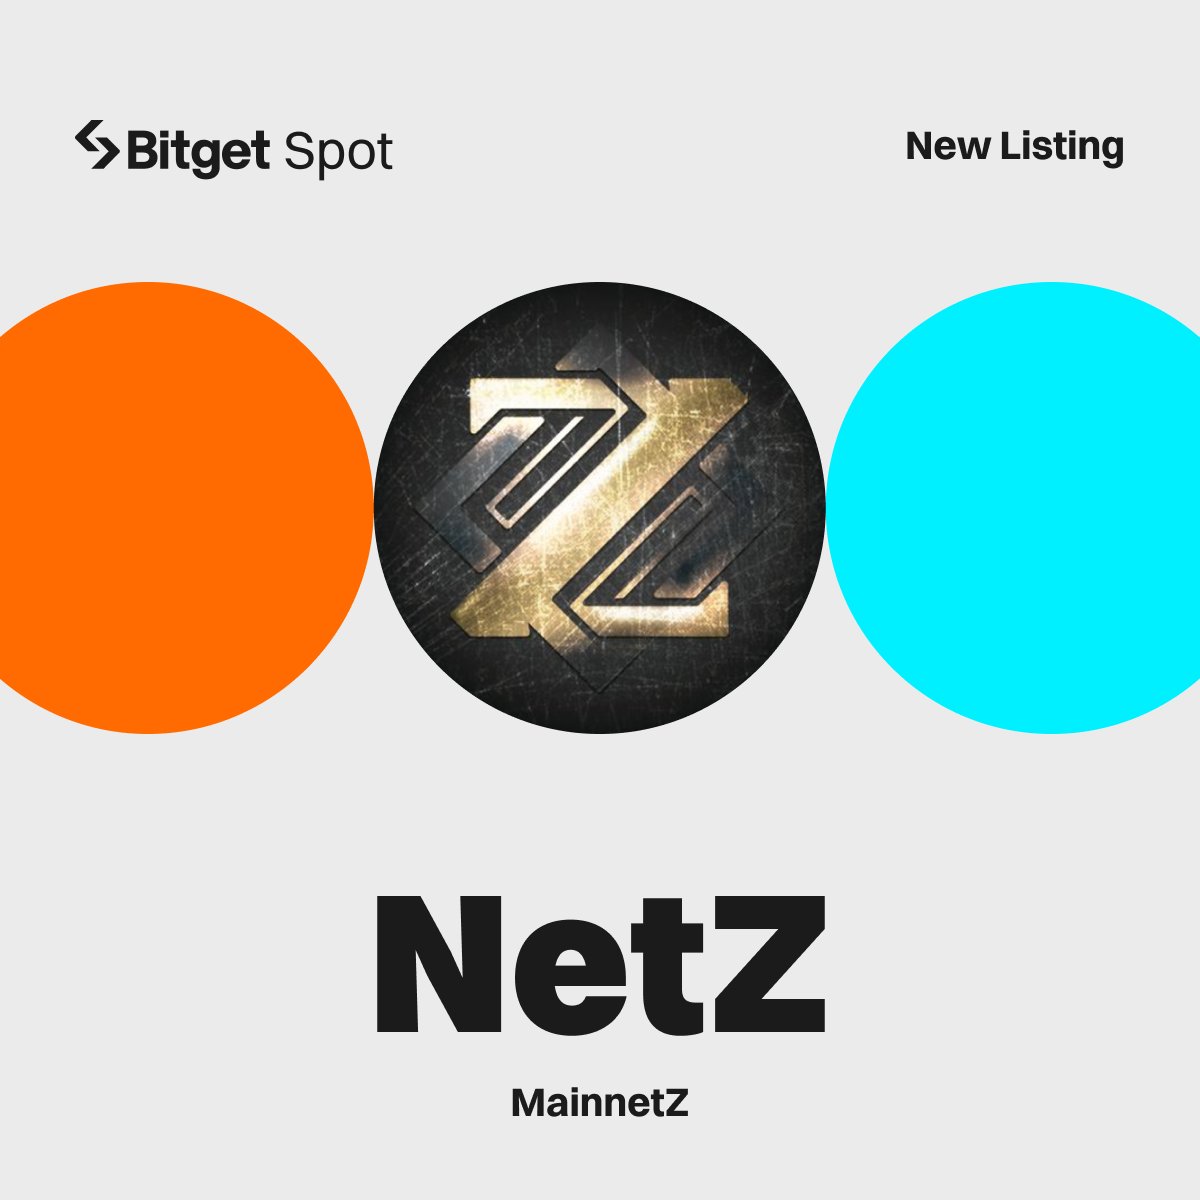 📢 New Listing - $NETZ @mainnetz #Bitget will list NETZ/USDT with 160,000 $NETZ up for grabs! 🔹Deposit: opened 🔹Trading starts: 11:00, Mar 22 (UTC) More details: bitget.com/en/support/art…